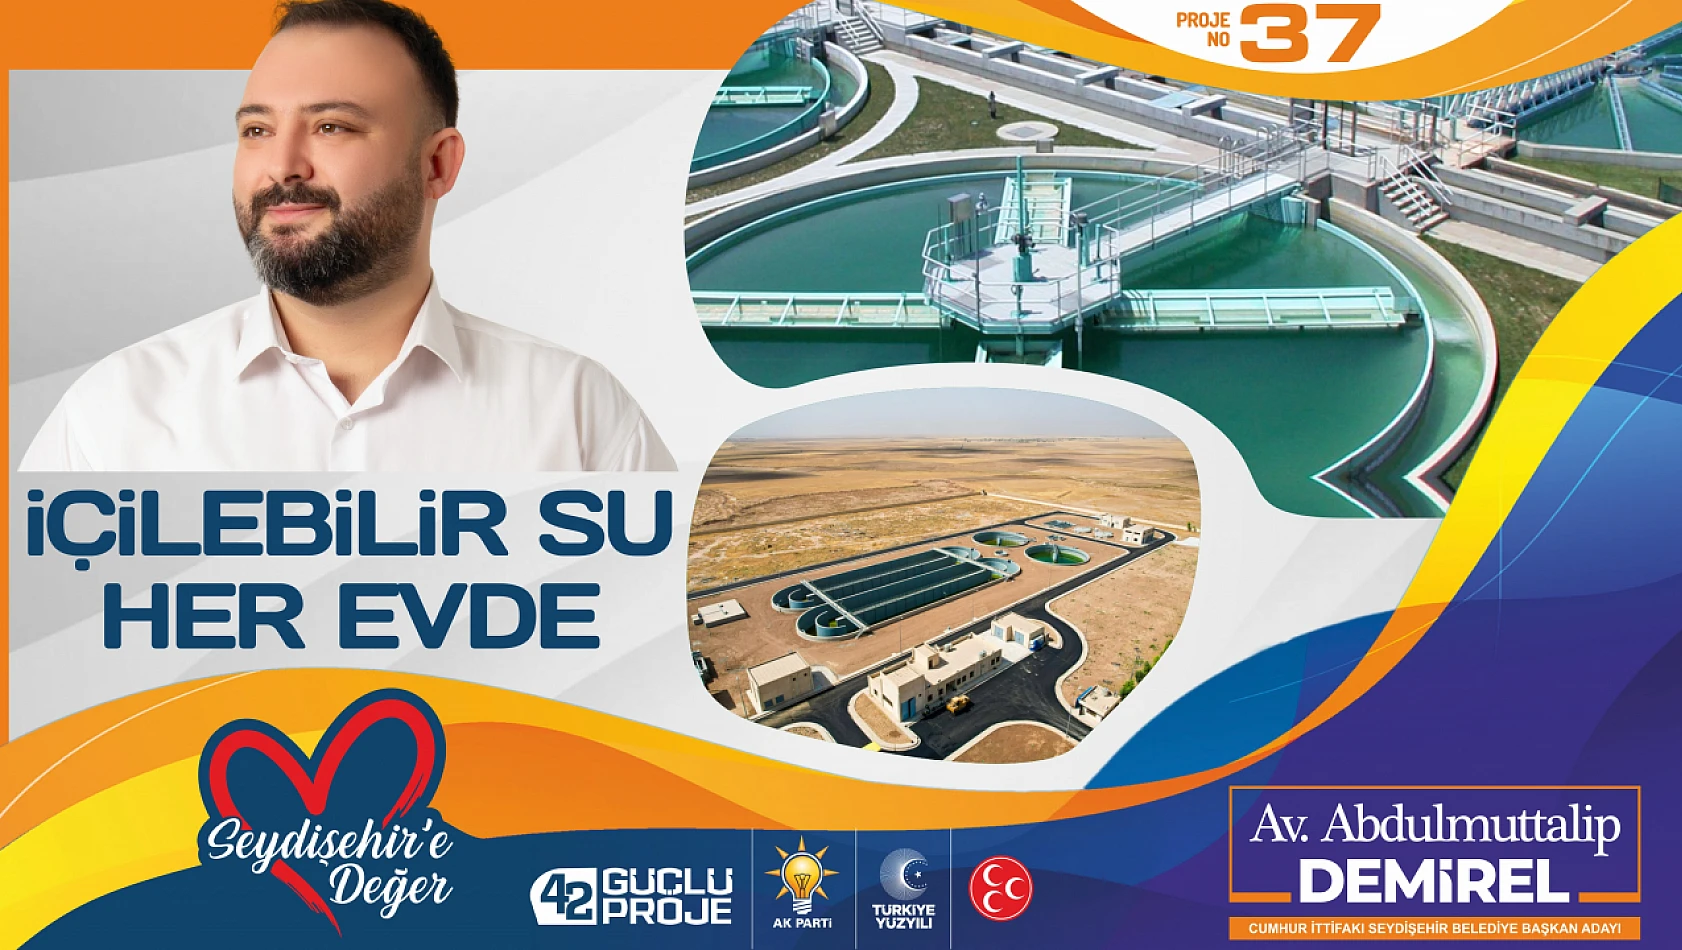 Seydişehir'in su sorununu çözeceğiz!